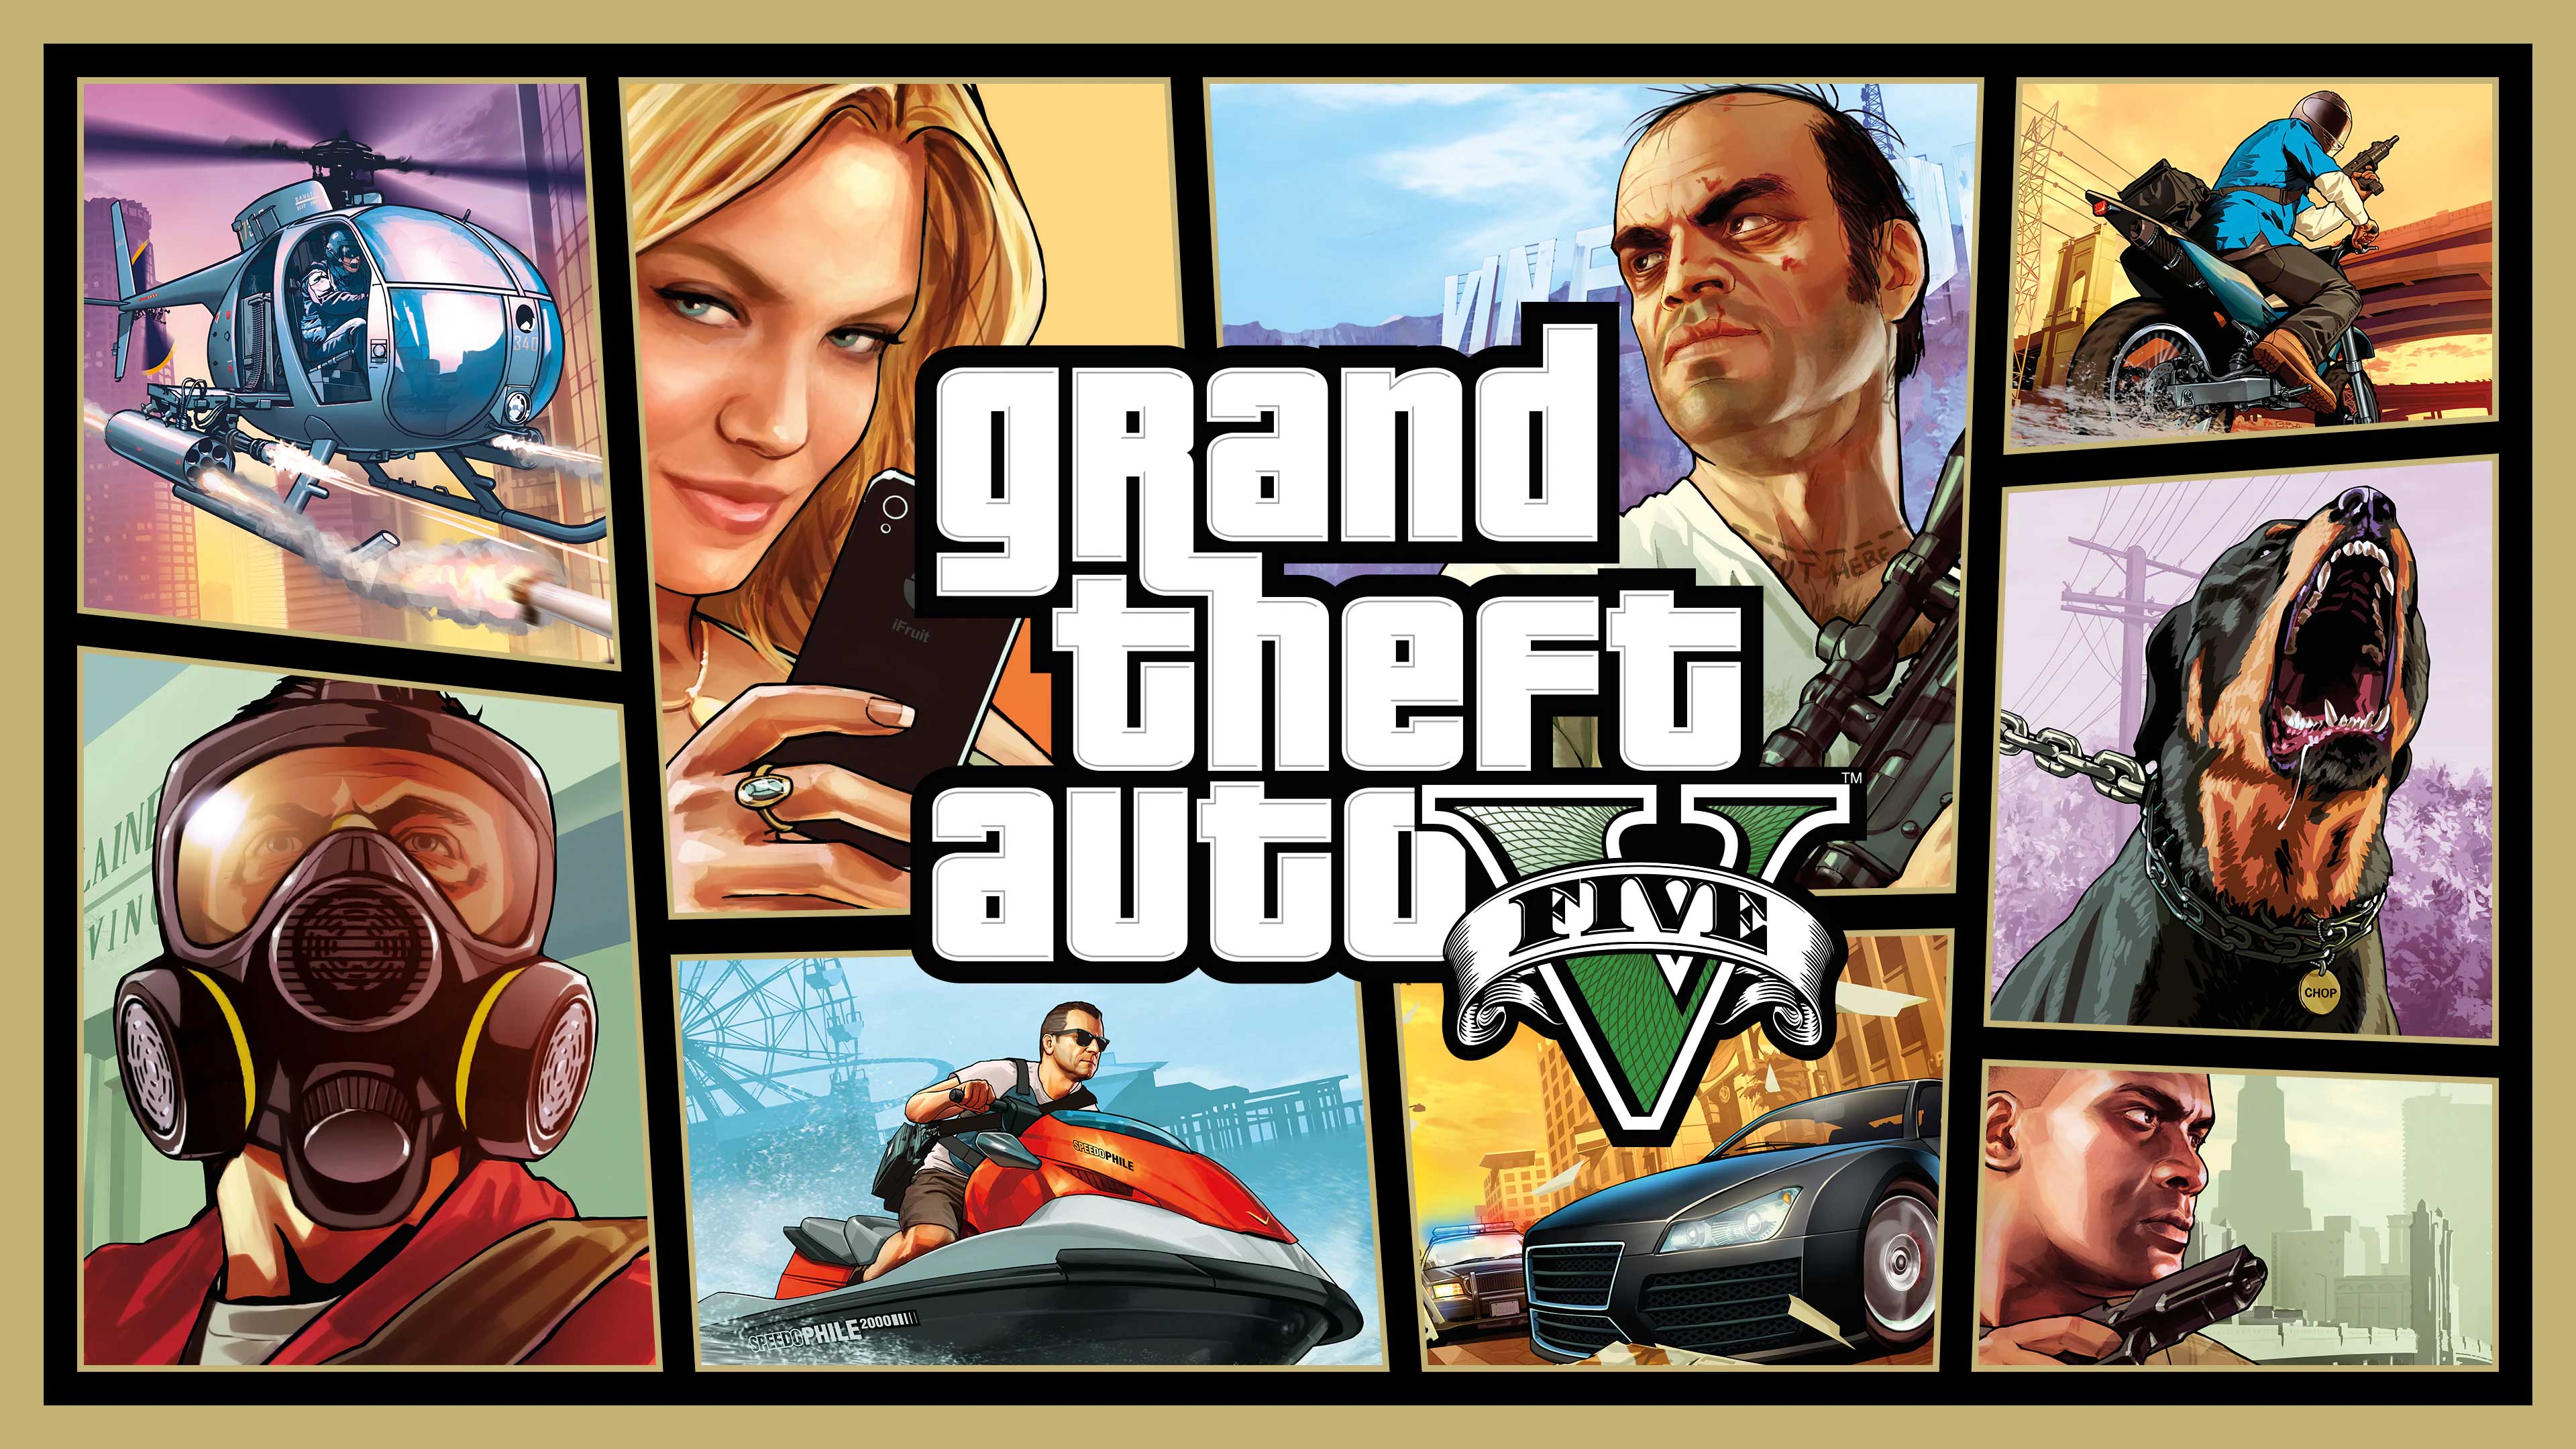 Grand Theft Auto V, Road to Video Games, roadtovideogames.com